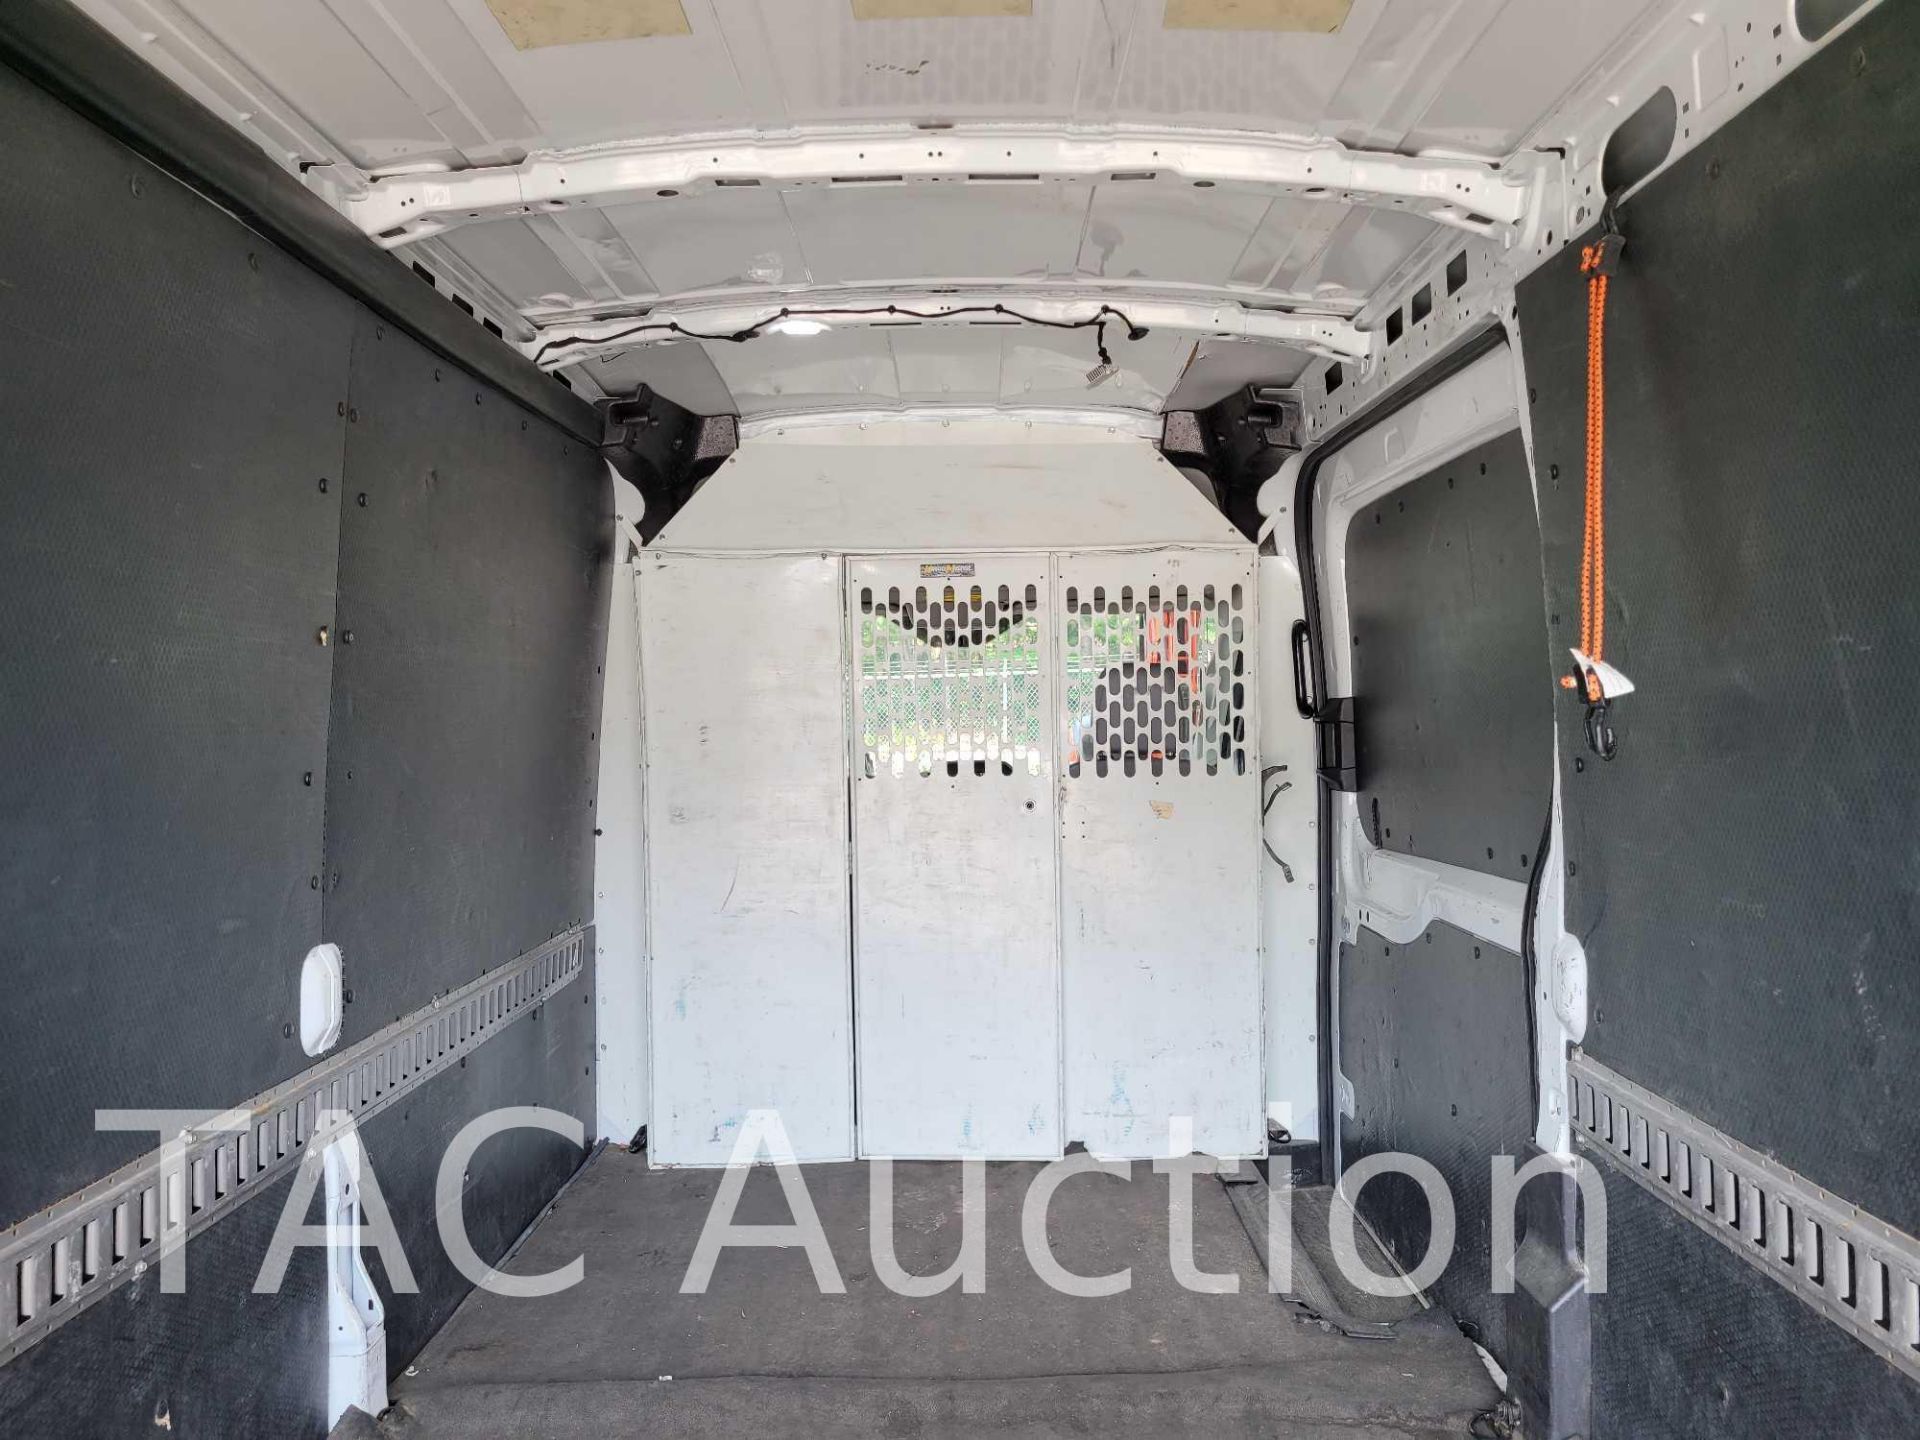 2019 Ford Transit 150 Cargo Van - Image 8 of 46